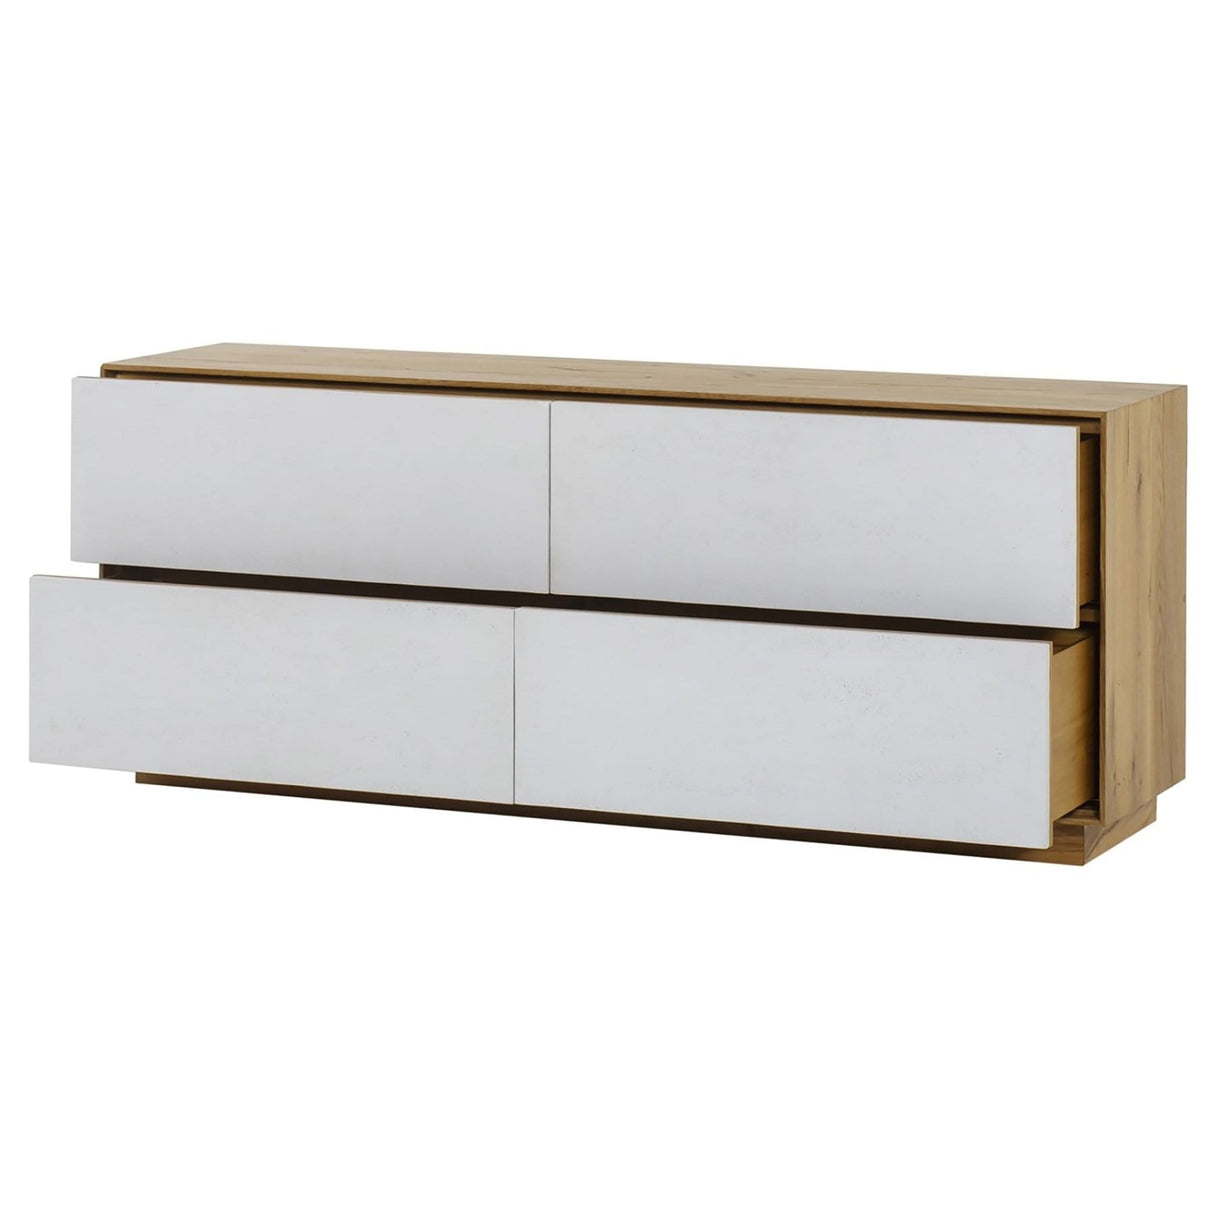 Thomas Bina Sands 4-Drawer Dresser Furniture thomas-bina-0704332